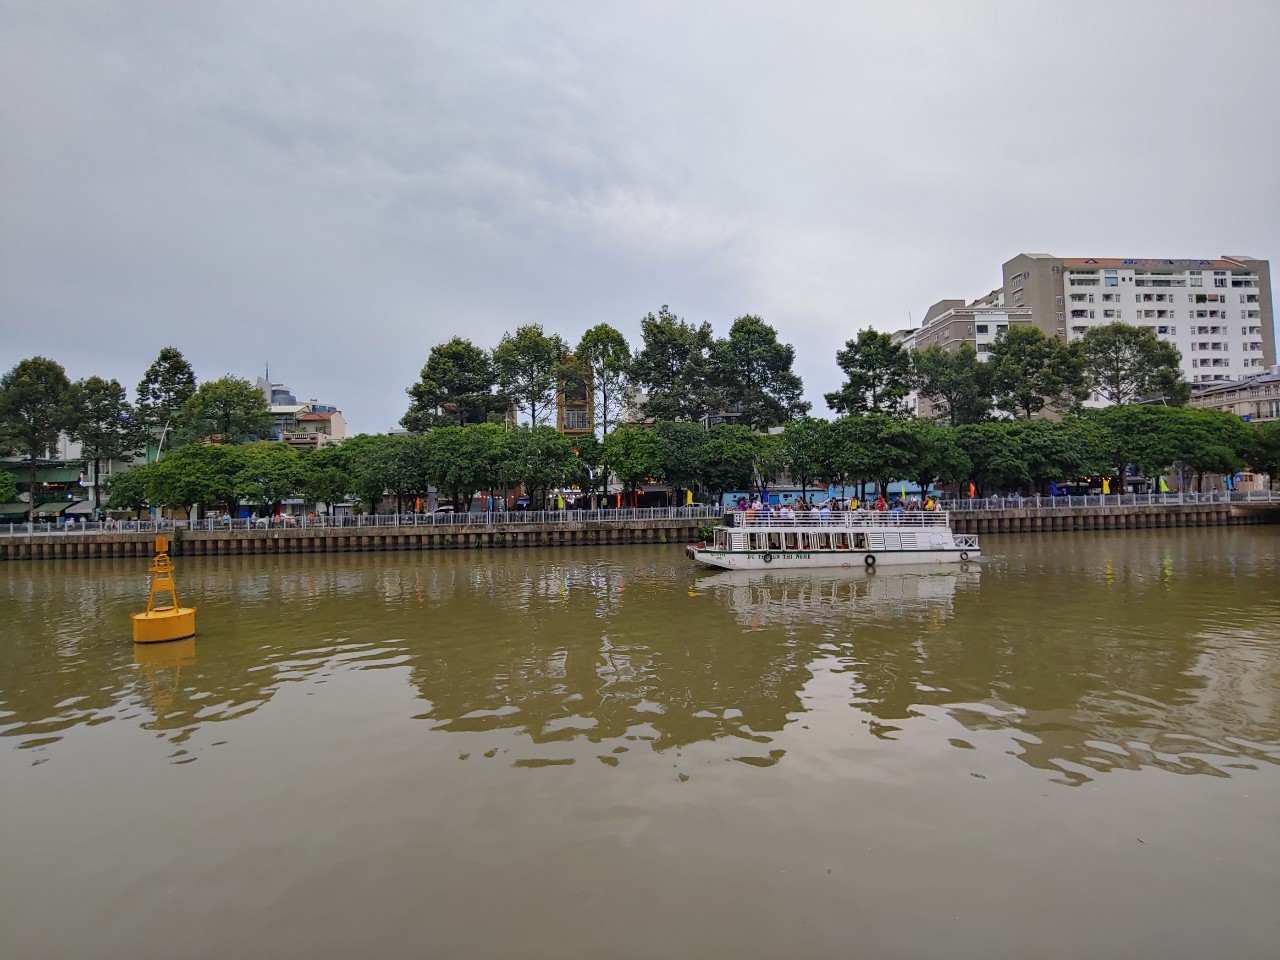 Đặc sản các vùng miền quy tụ tại kênh Nhiêu Lộc - Thị Nghè - Ảnh 6.